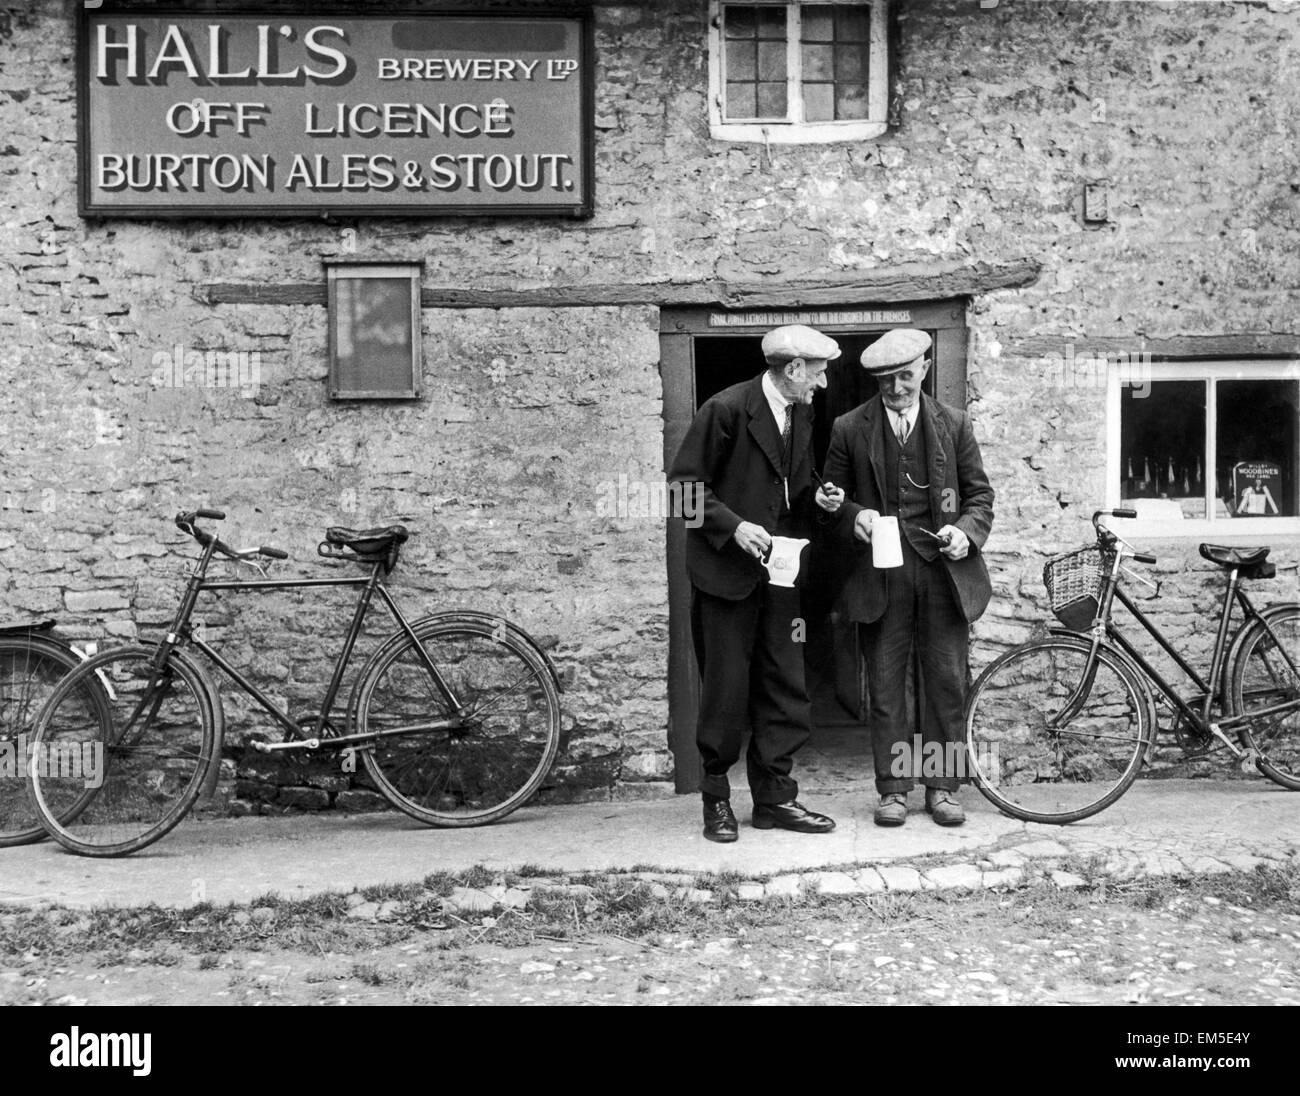 Halls birreria licenza Off Burton Ales & Stout in Bucknell di Oxford Il villaggio non dispone di un pub in modo locali hanno bisogno di acquistare la loro birra alla licenza off , ma non deve bere nei locali. Così il villaggio verde è diventato il pub locale. 23/9/1946 Foto Stock